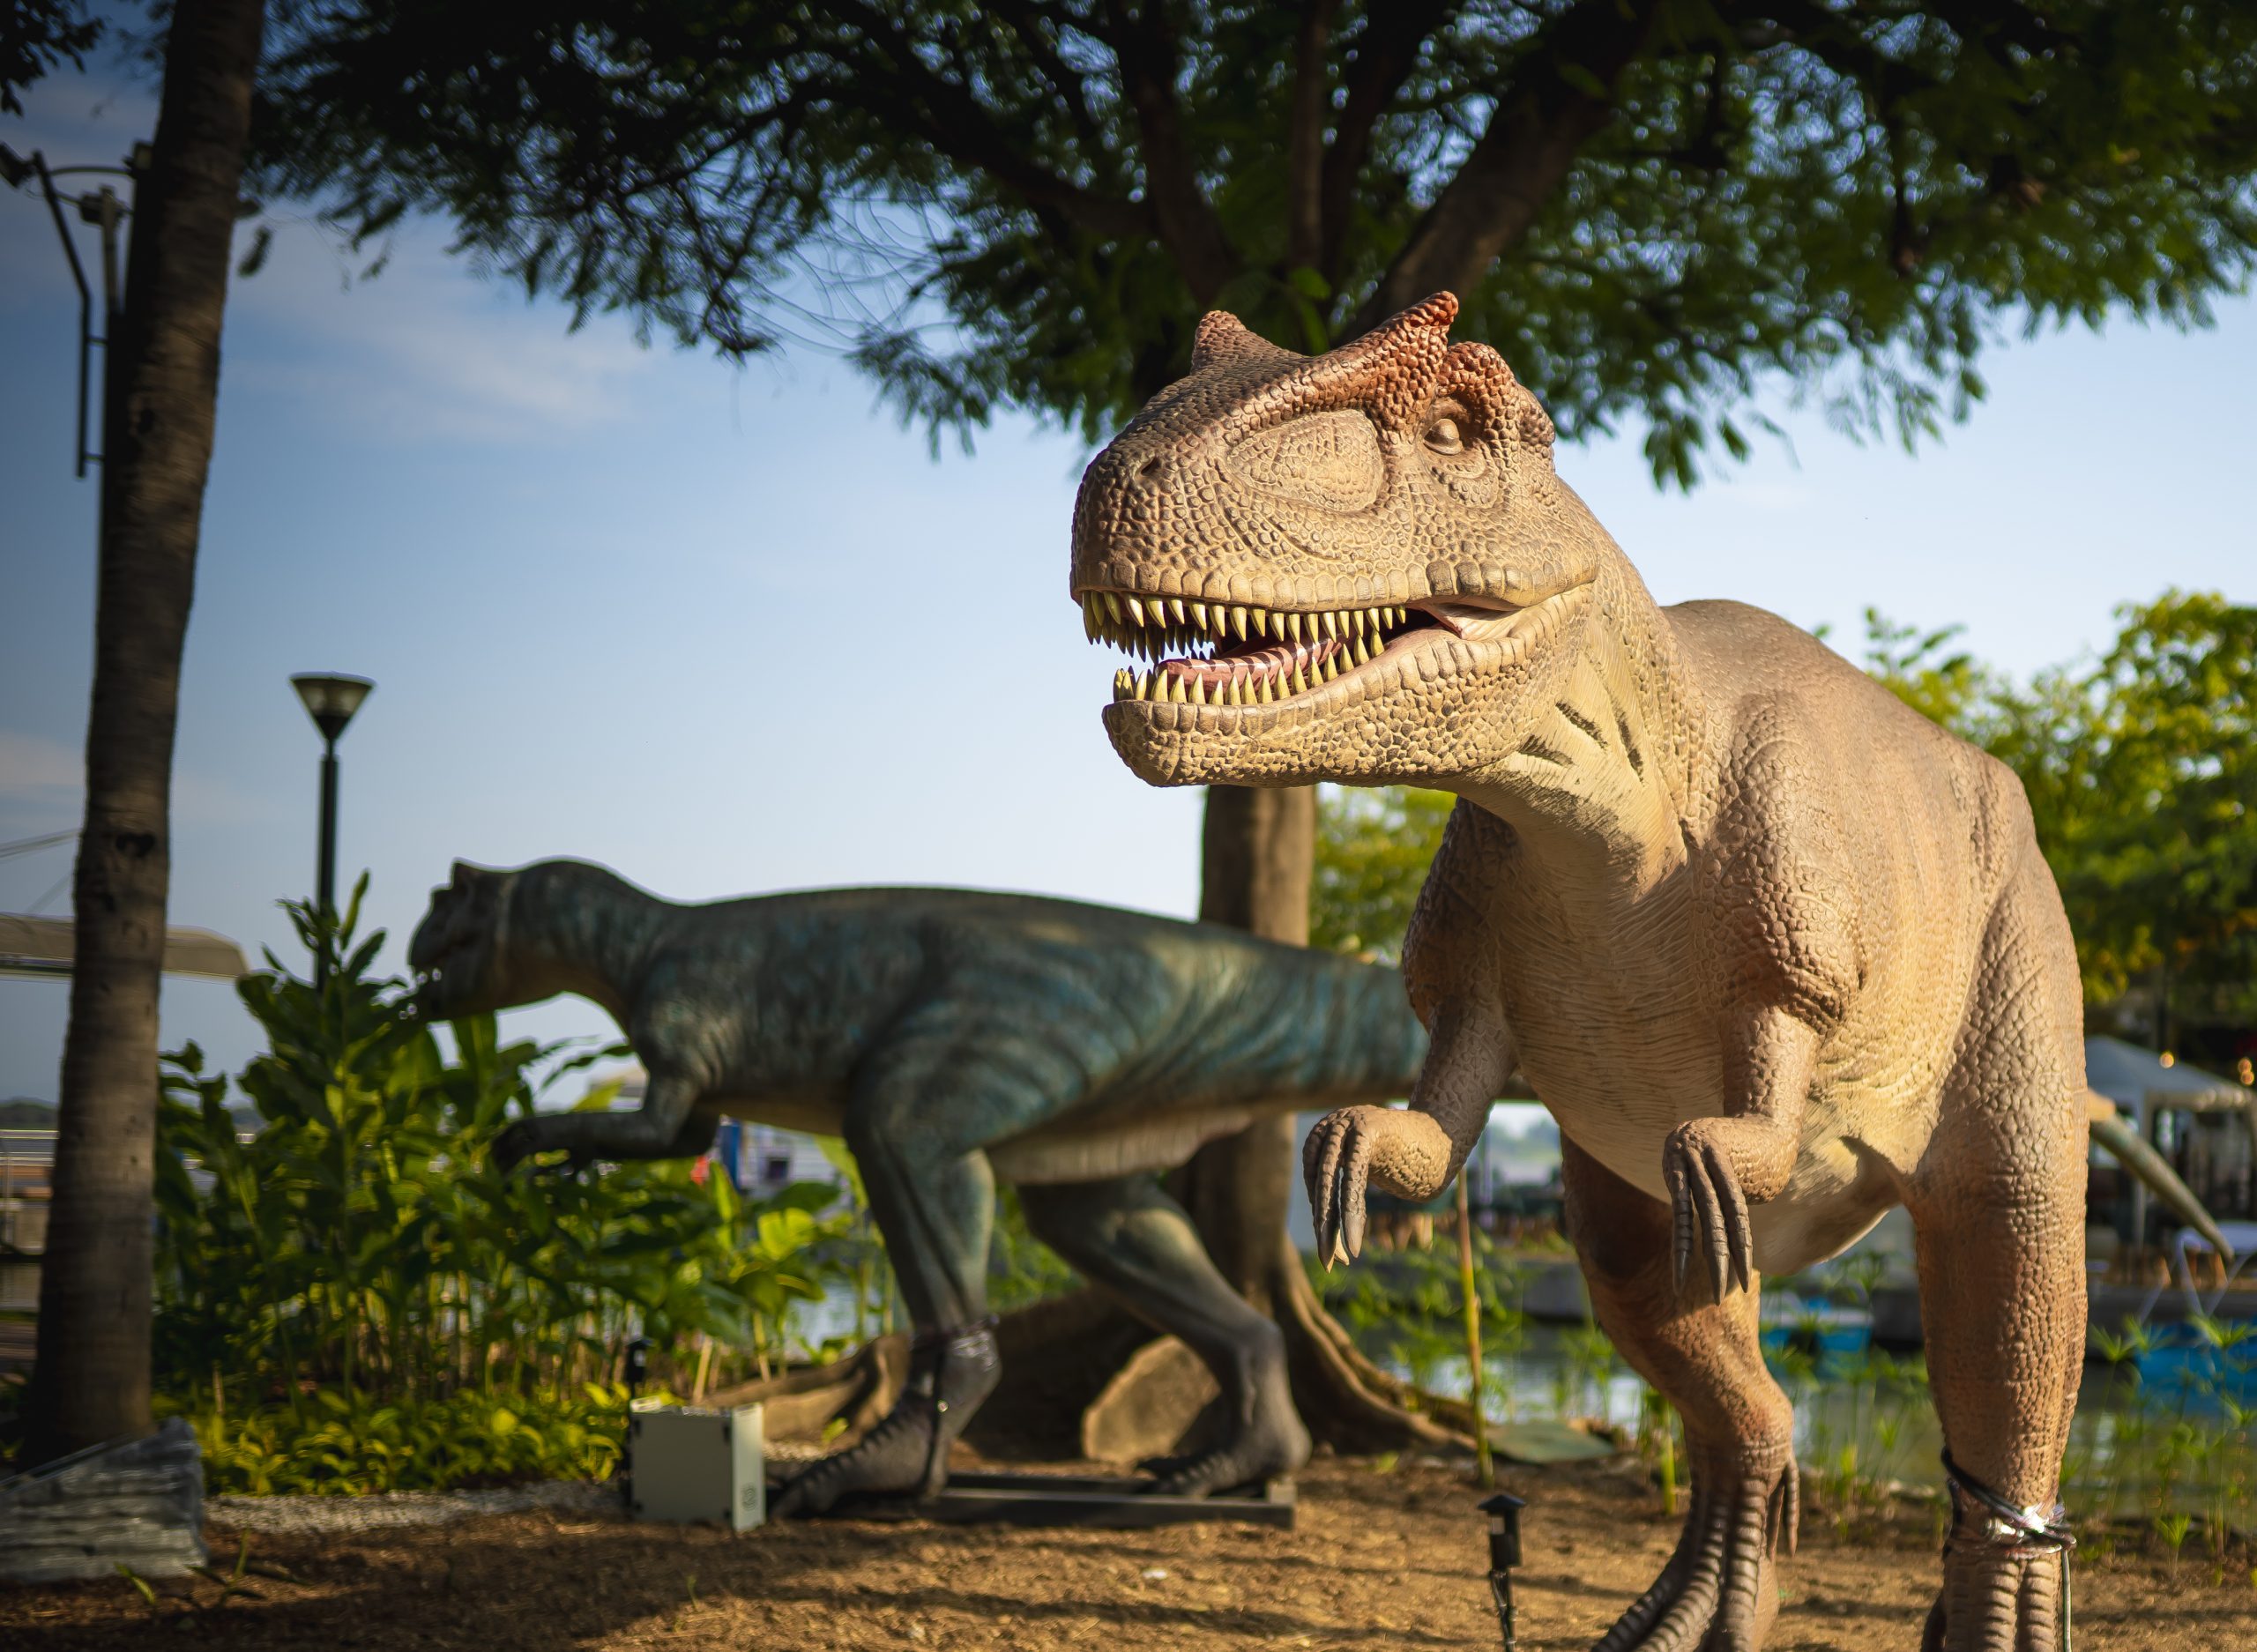 Exposición de dinosaurios animatrónicos llegará a 5 ciudades de Ecuador